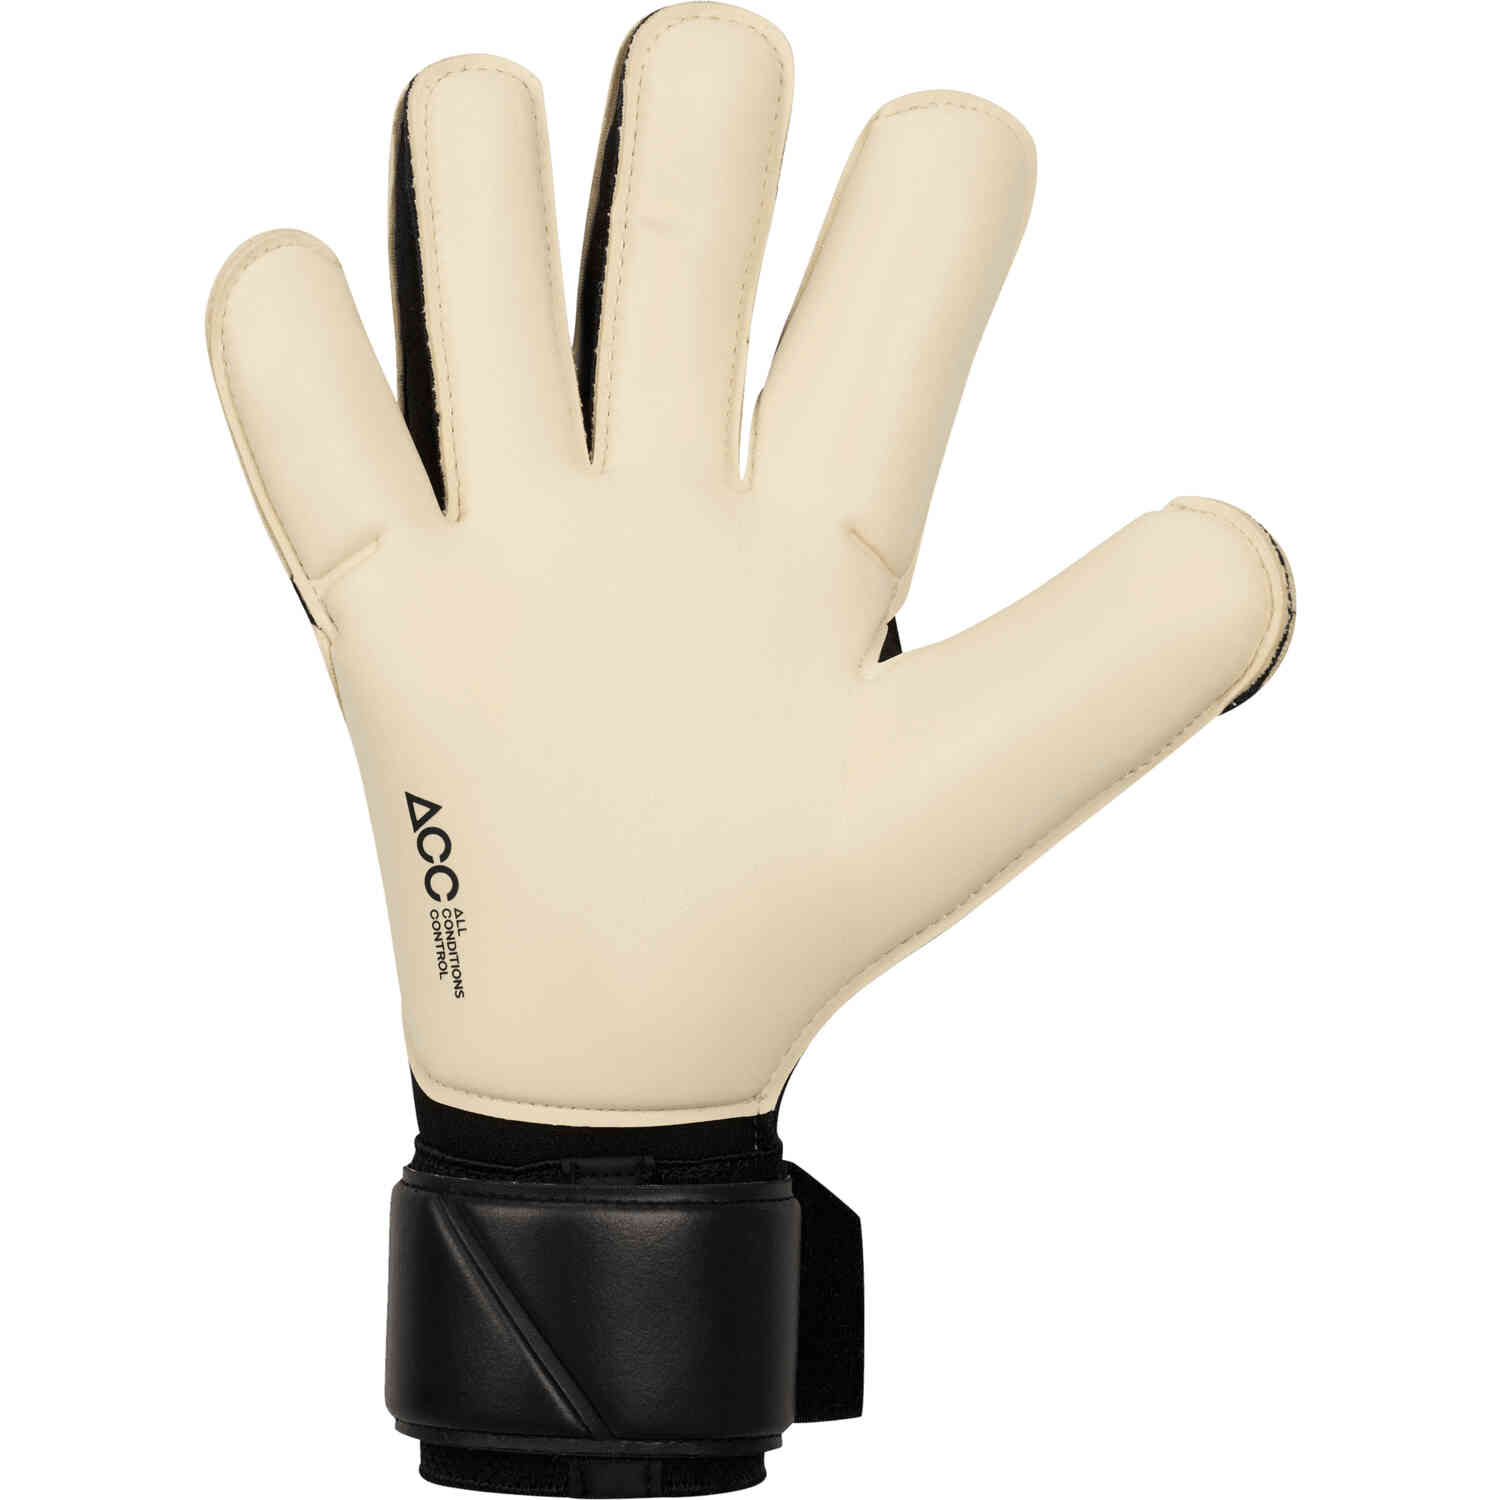 Nike Vapor Grip 3 Elite Goalkeeper Gloves - Black & White with Metallic ...